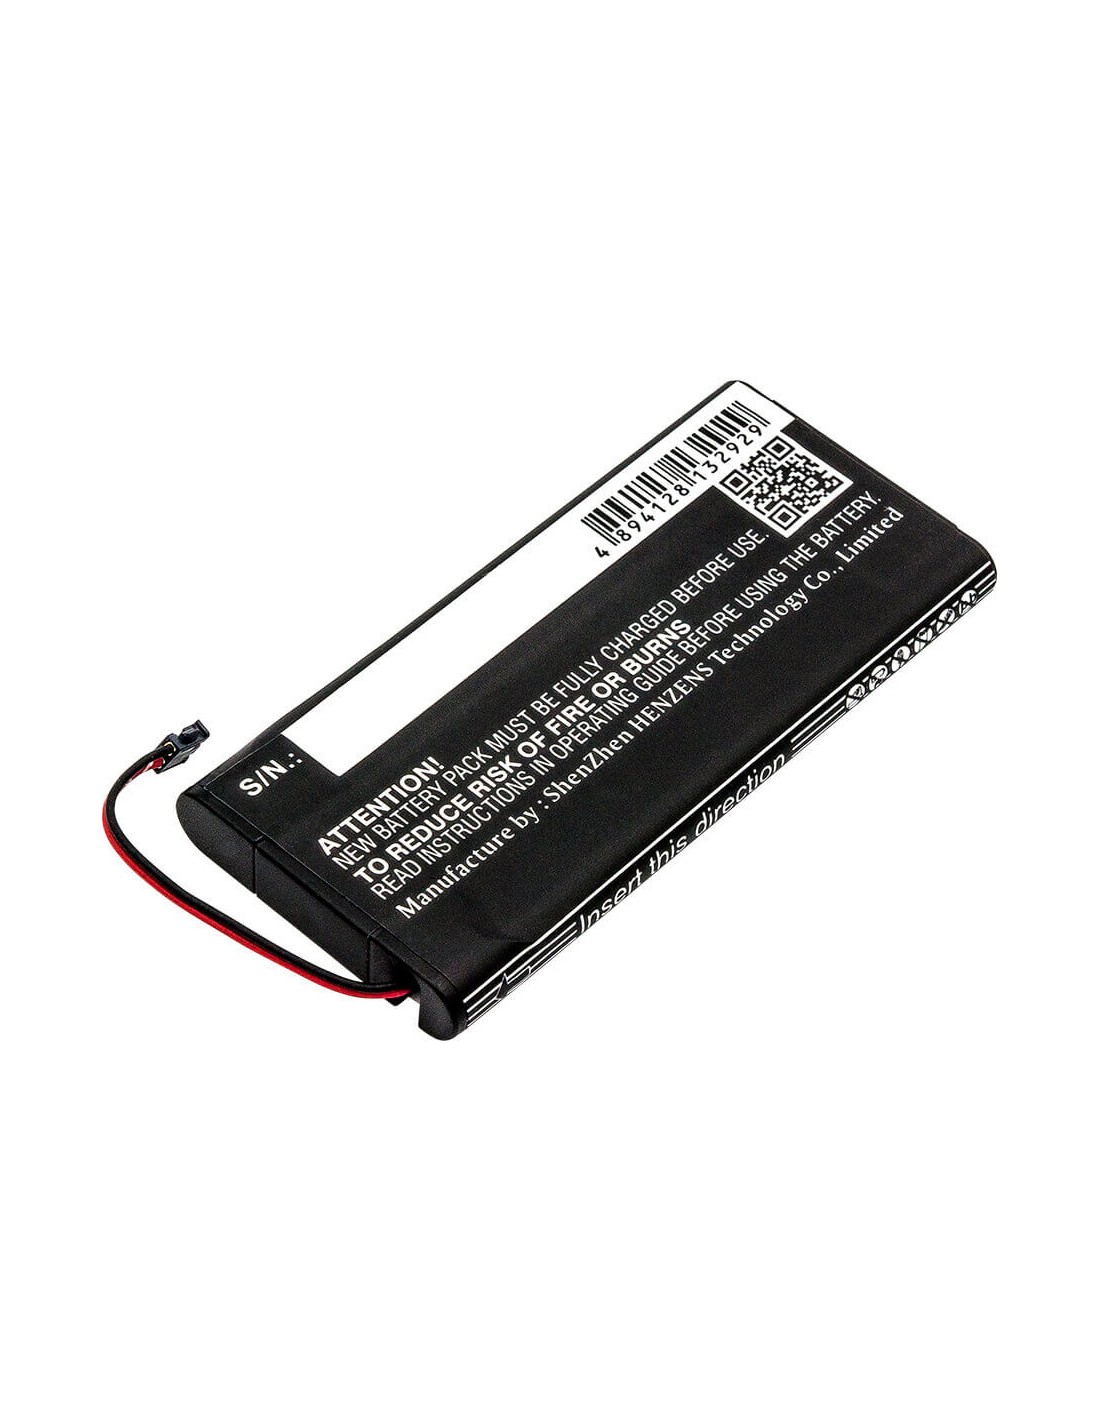 Battery for Nintendo, Hac-015, Hac-016, Hac-a-jcl-c0, Hac-a-jc 3.7V, 520mAh - 1.92Wh